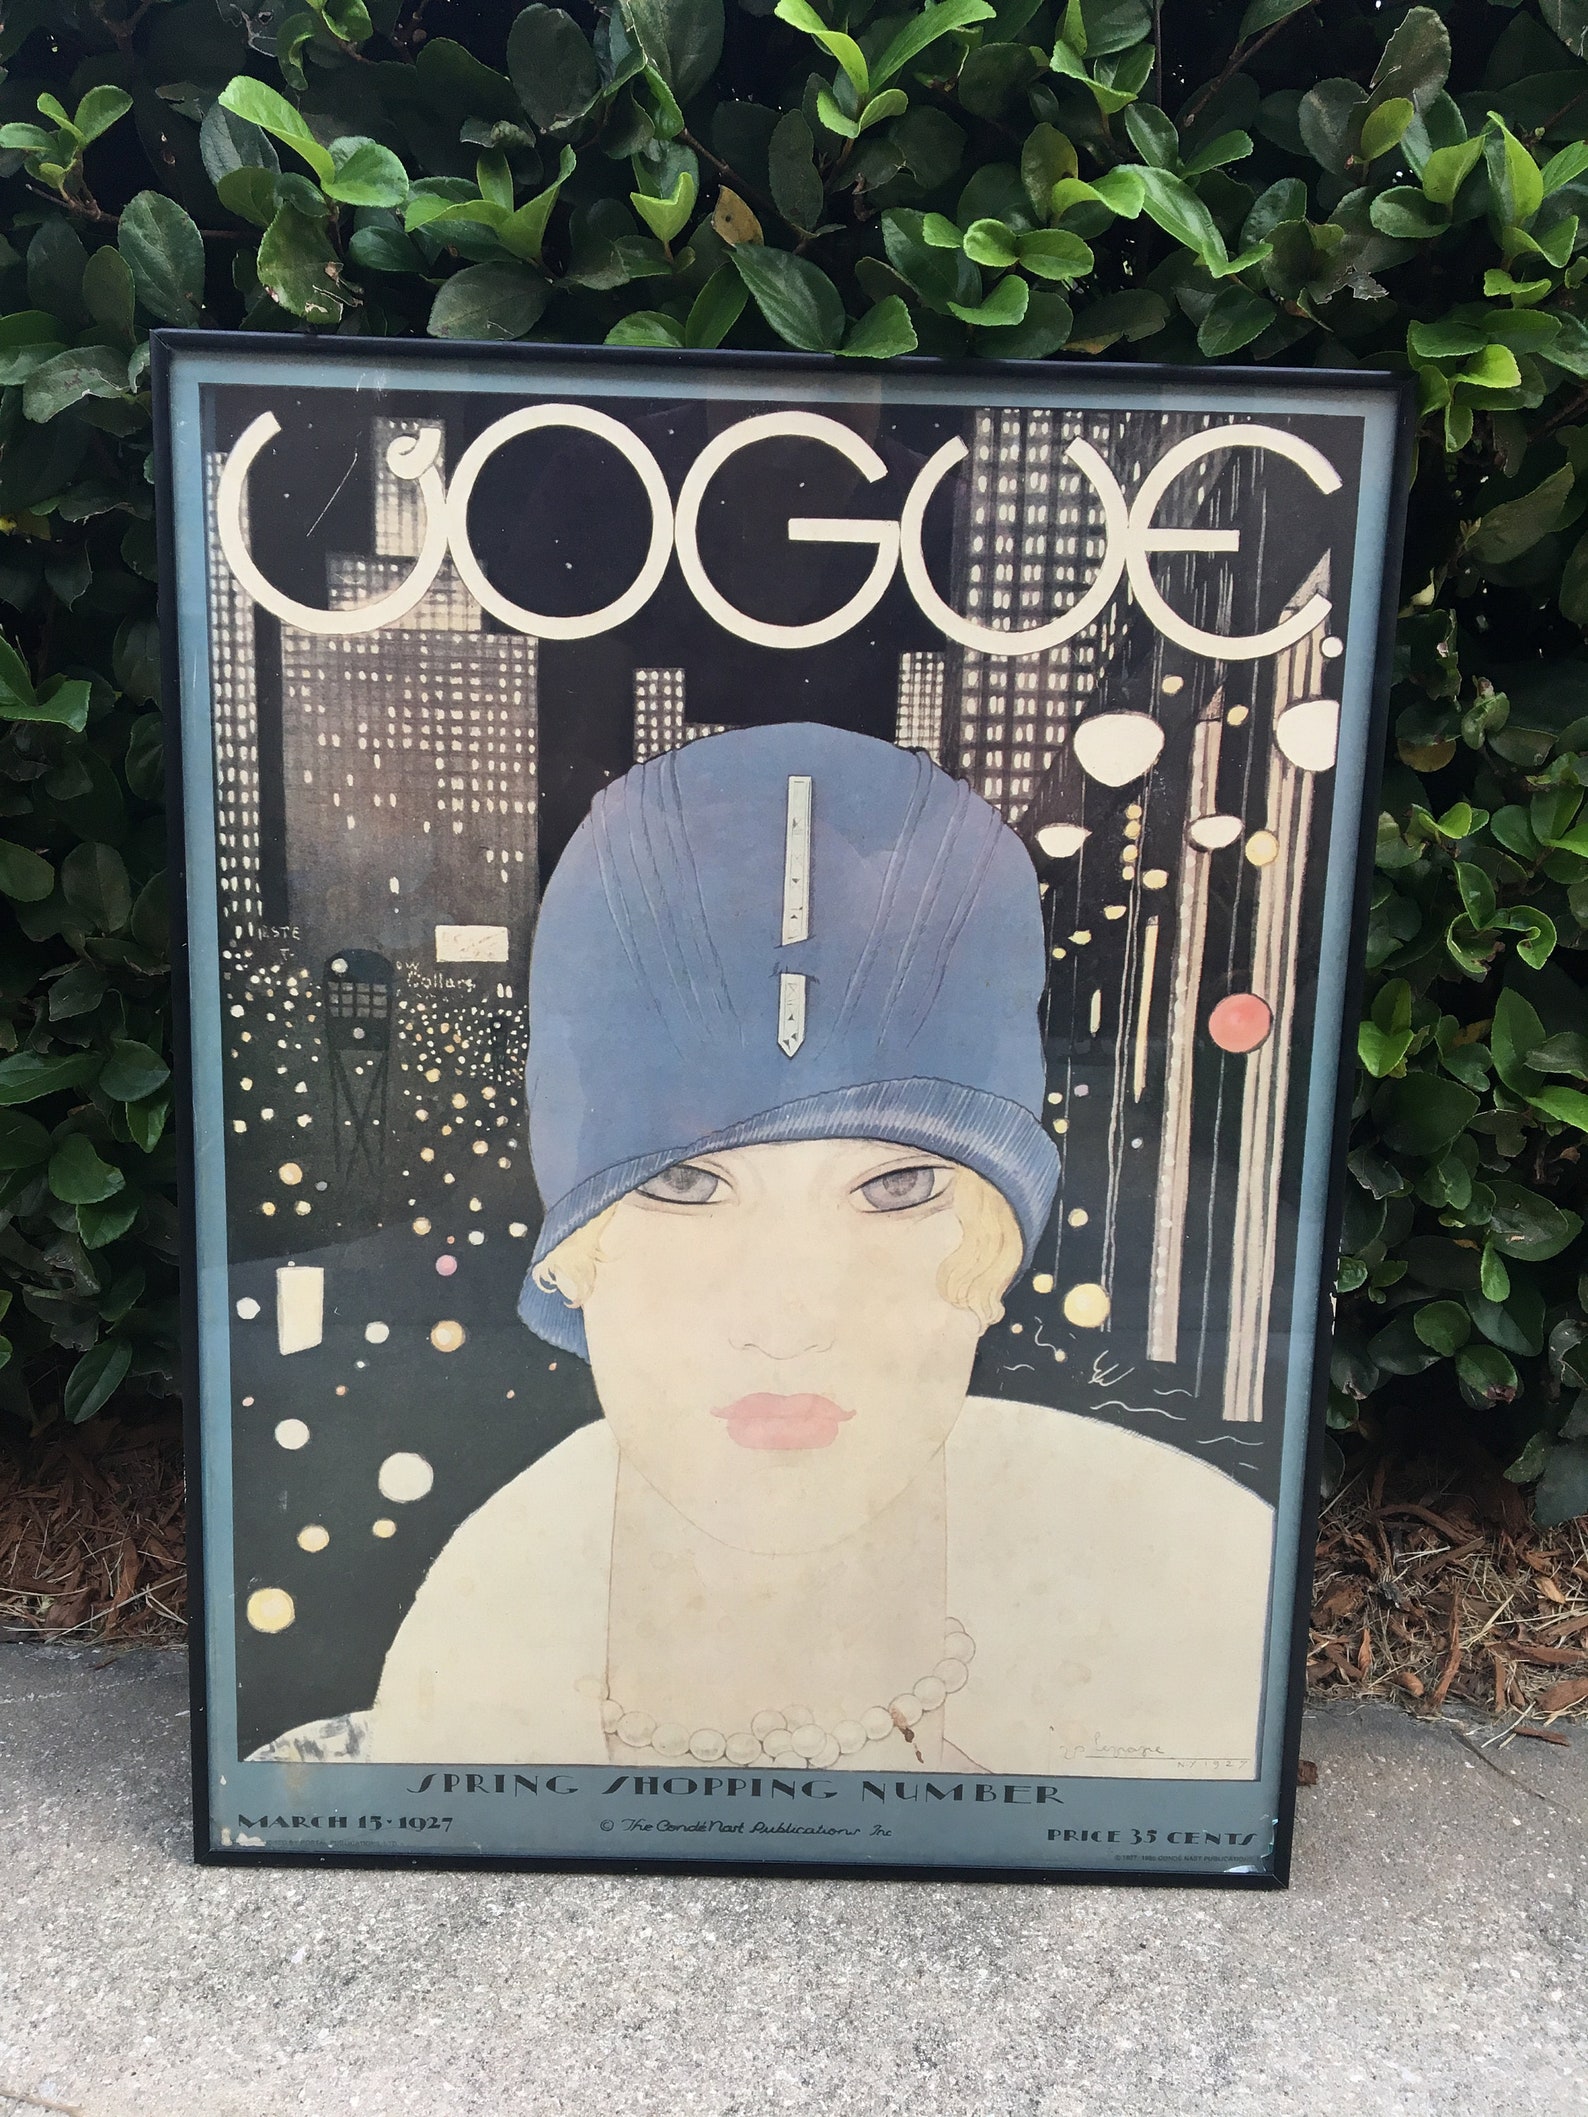  Affiche vogue  vintage de Lee Miller en couverture de Vogue  